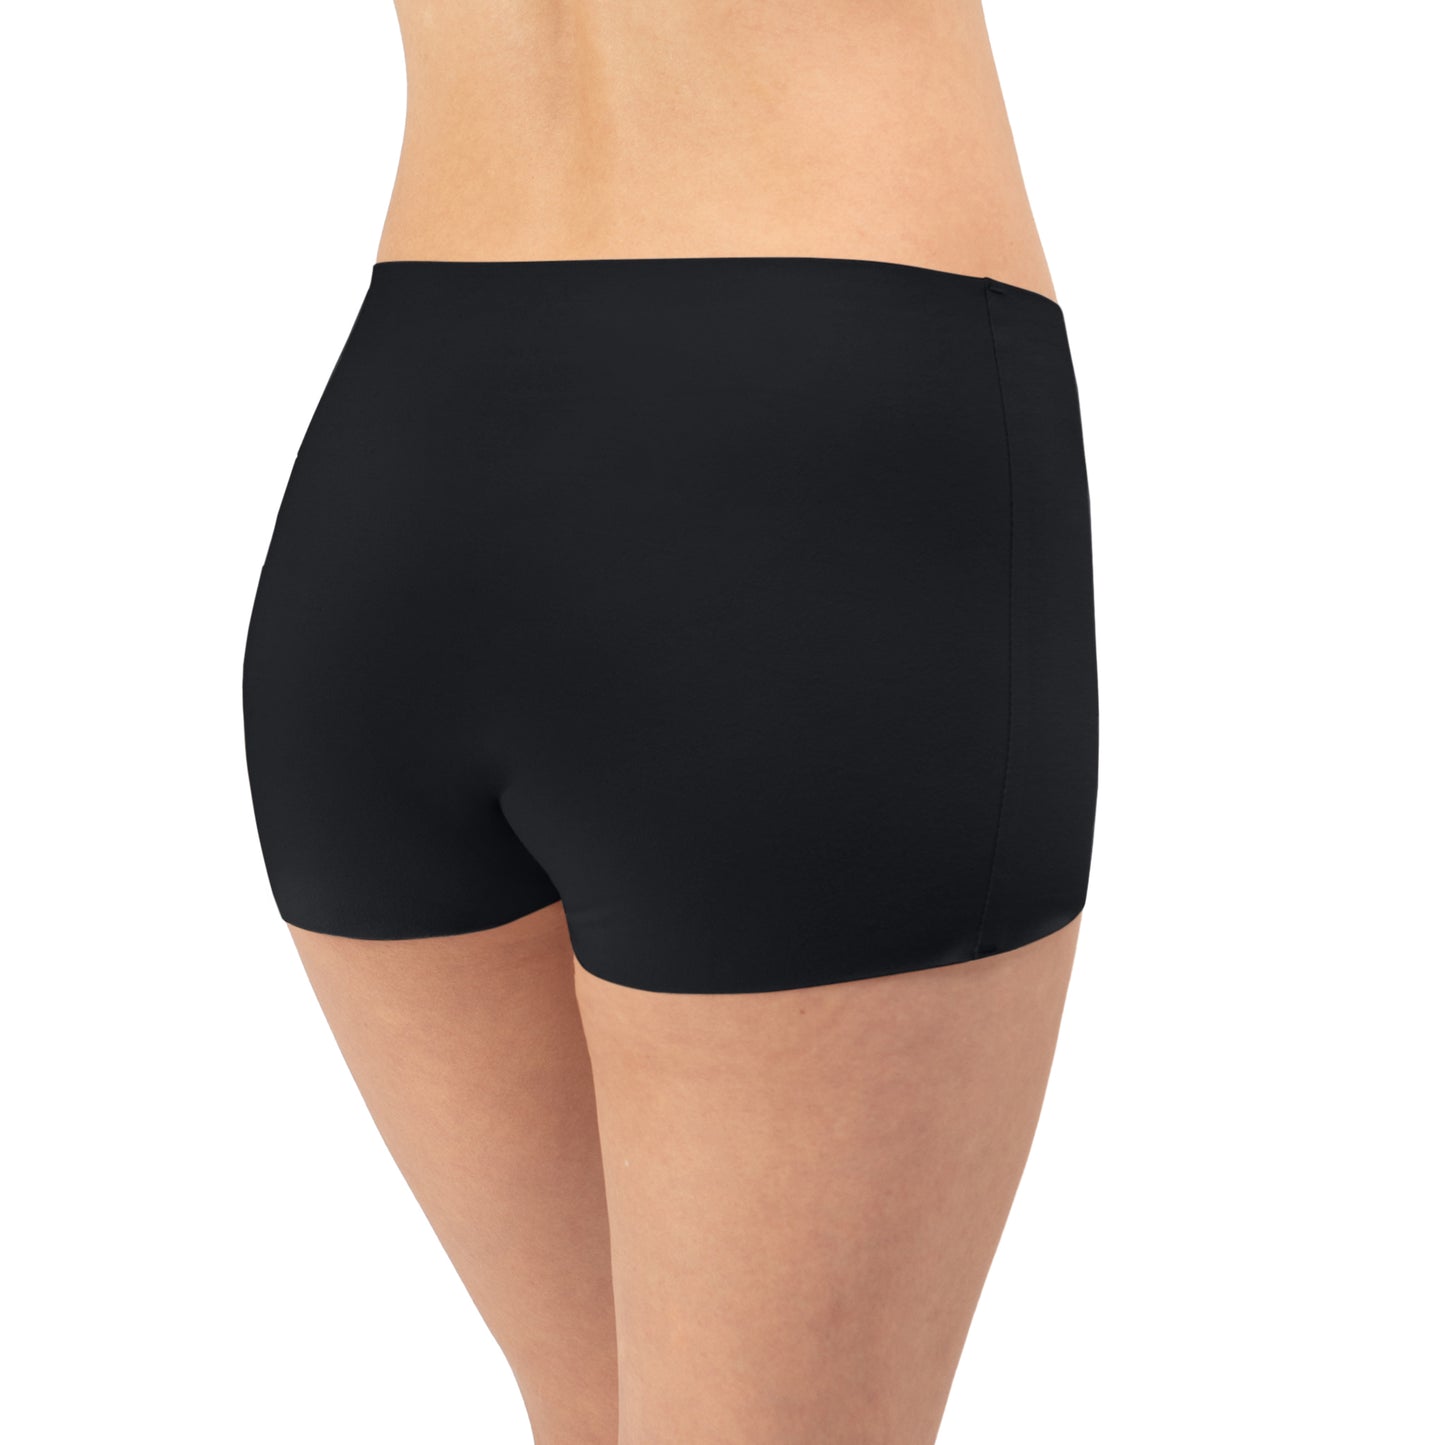 Shortie Underwear - Black, Pale, Tan Bras & Lingerie - Underwear - Short PANTY PROMISE   